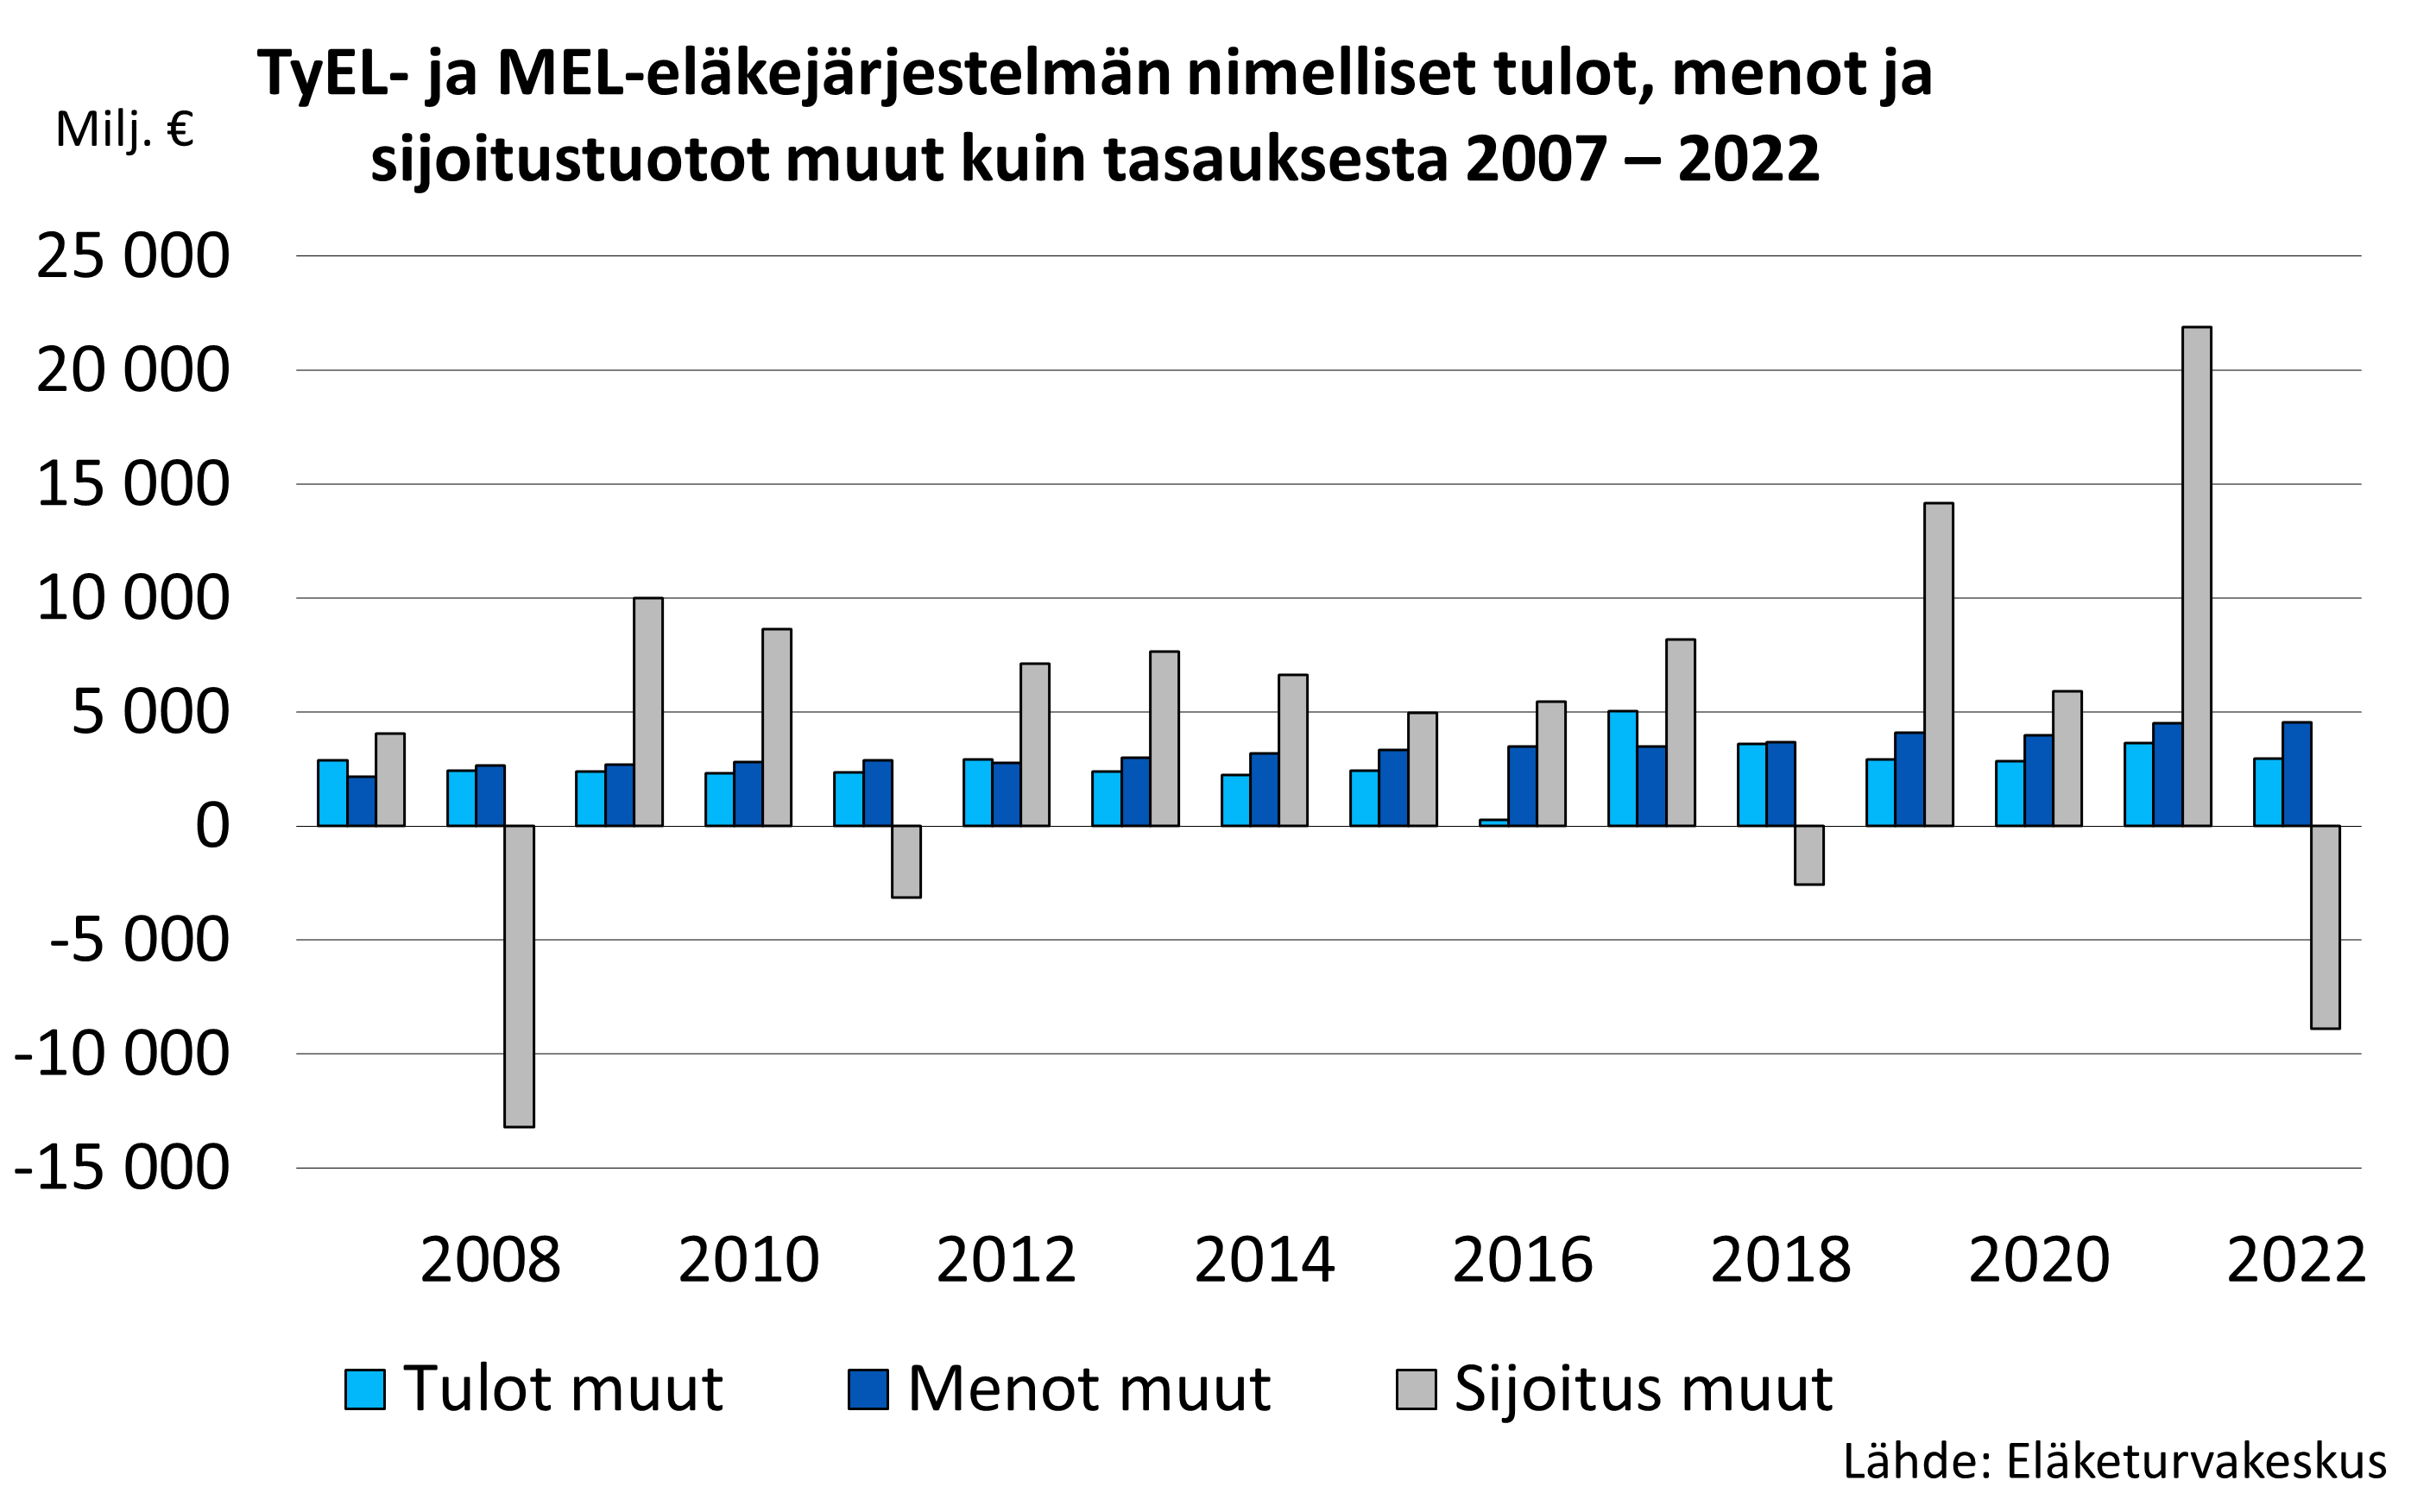 TyEL- ja MEL-eläkejärjestelmän nimelliset tulot, menot ja sijoitustuotot muut kuin tasauksesta 2007 – 2020